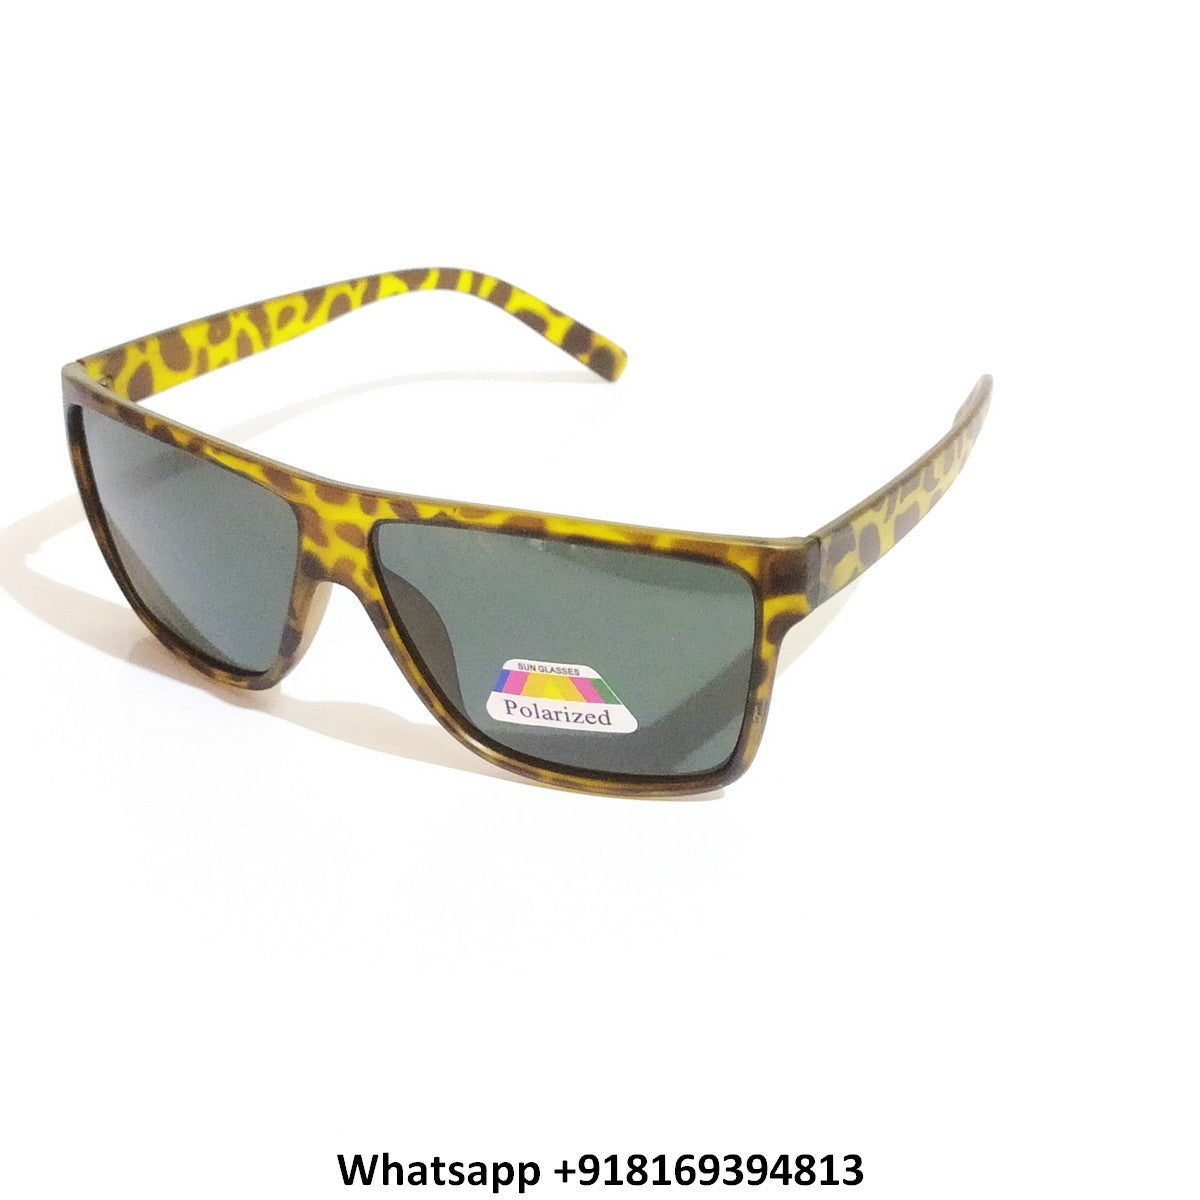 Sapphire Polarized Driving Sunglasses for Men and Women 413062da